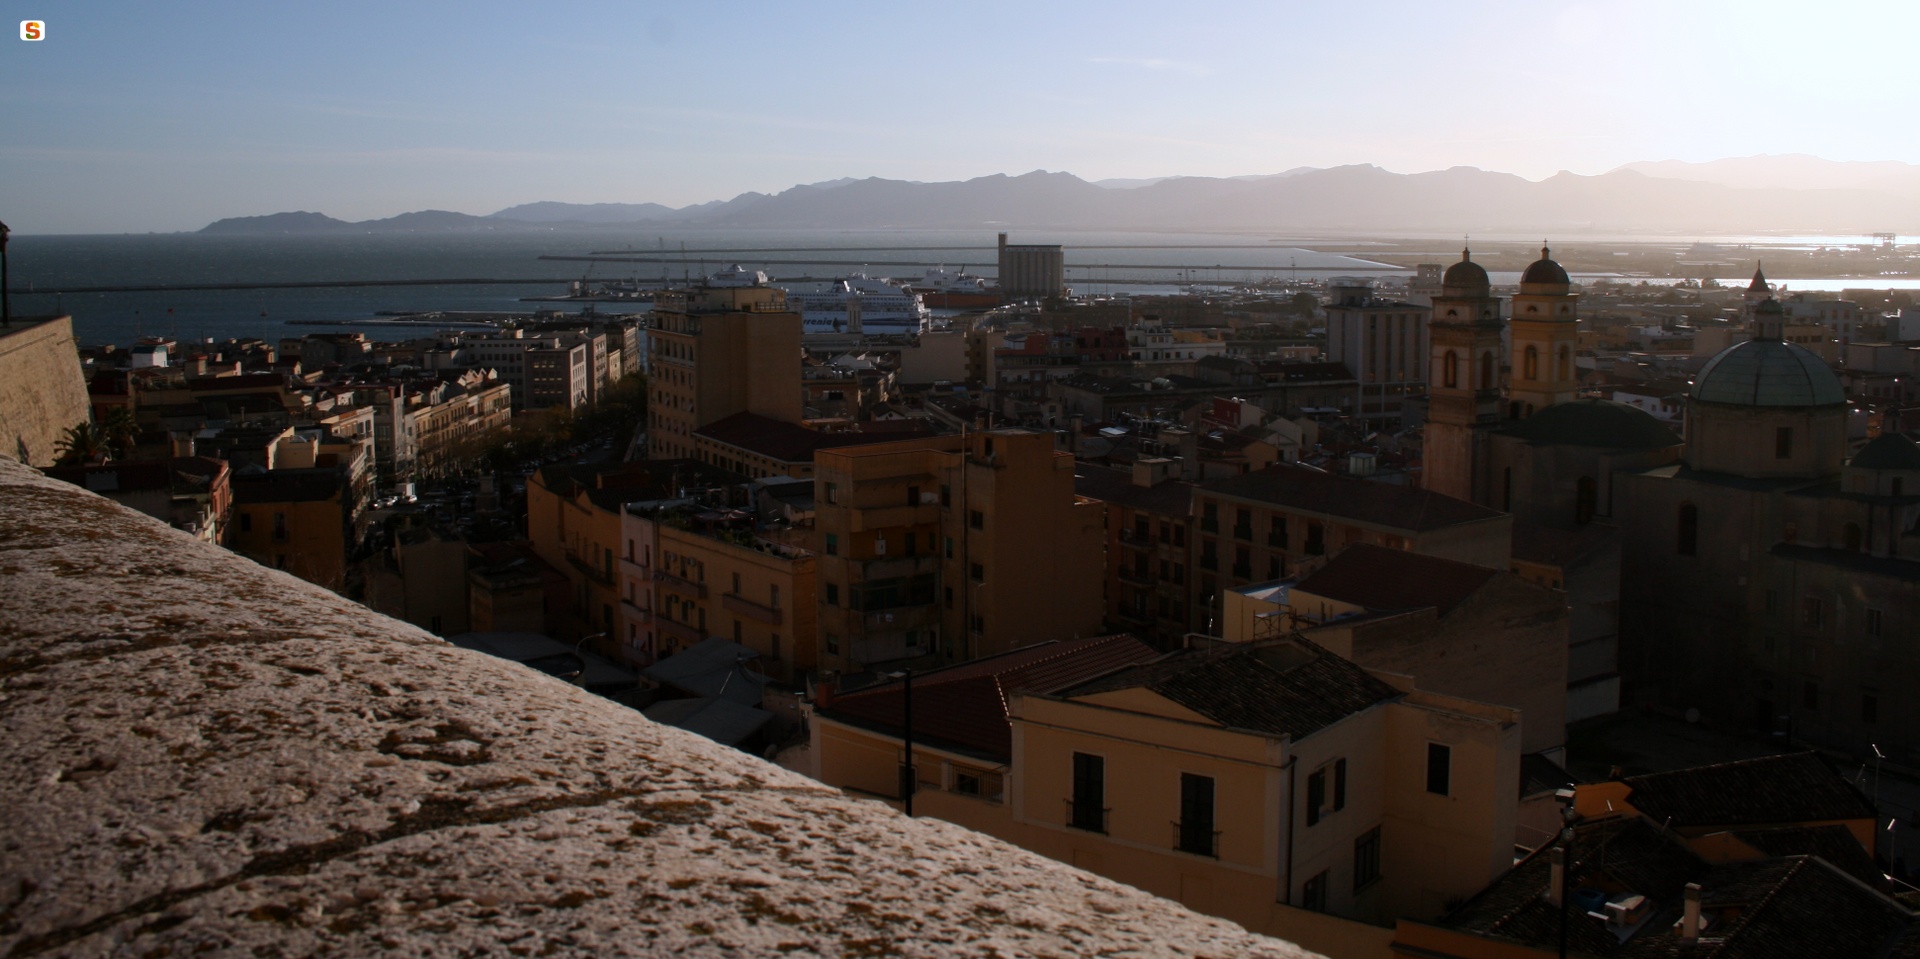 Vista su Cagliari